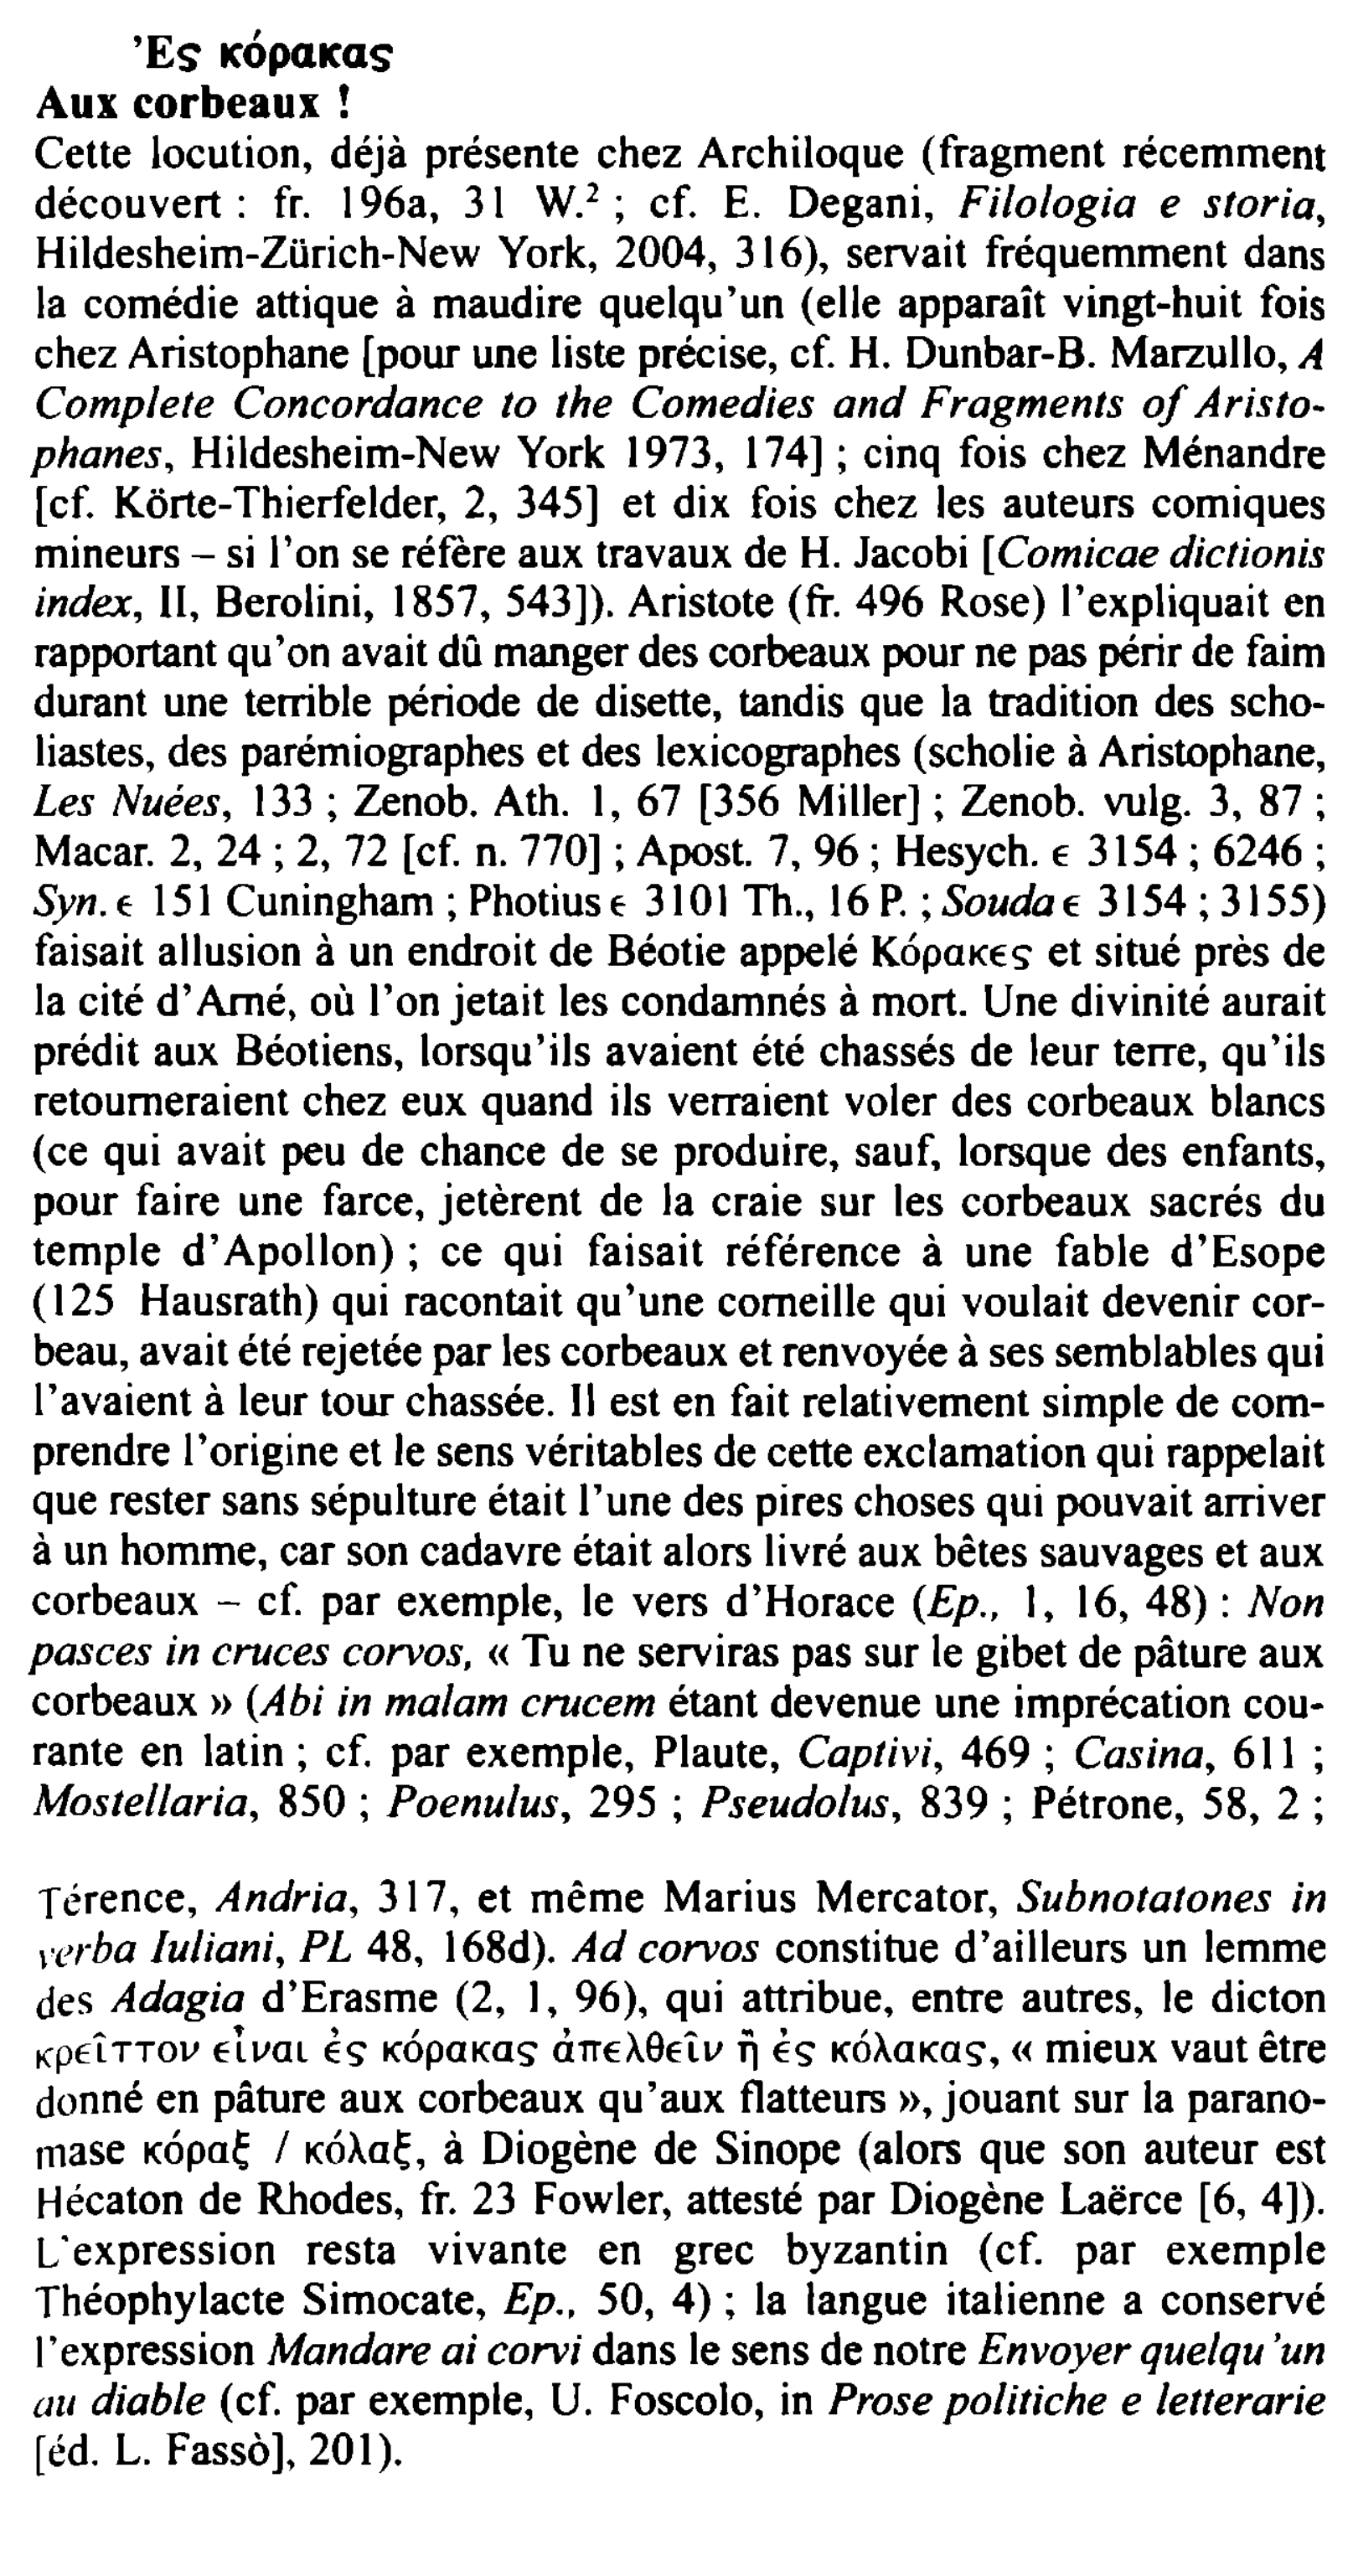 Prévisualisation du document '
'Es ICOpŒICŒS
Aux corbeaux !
Cette locution, déjà présente chez Archiloque (fragment récemment
découvert : fr. 196a, 31 W....